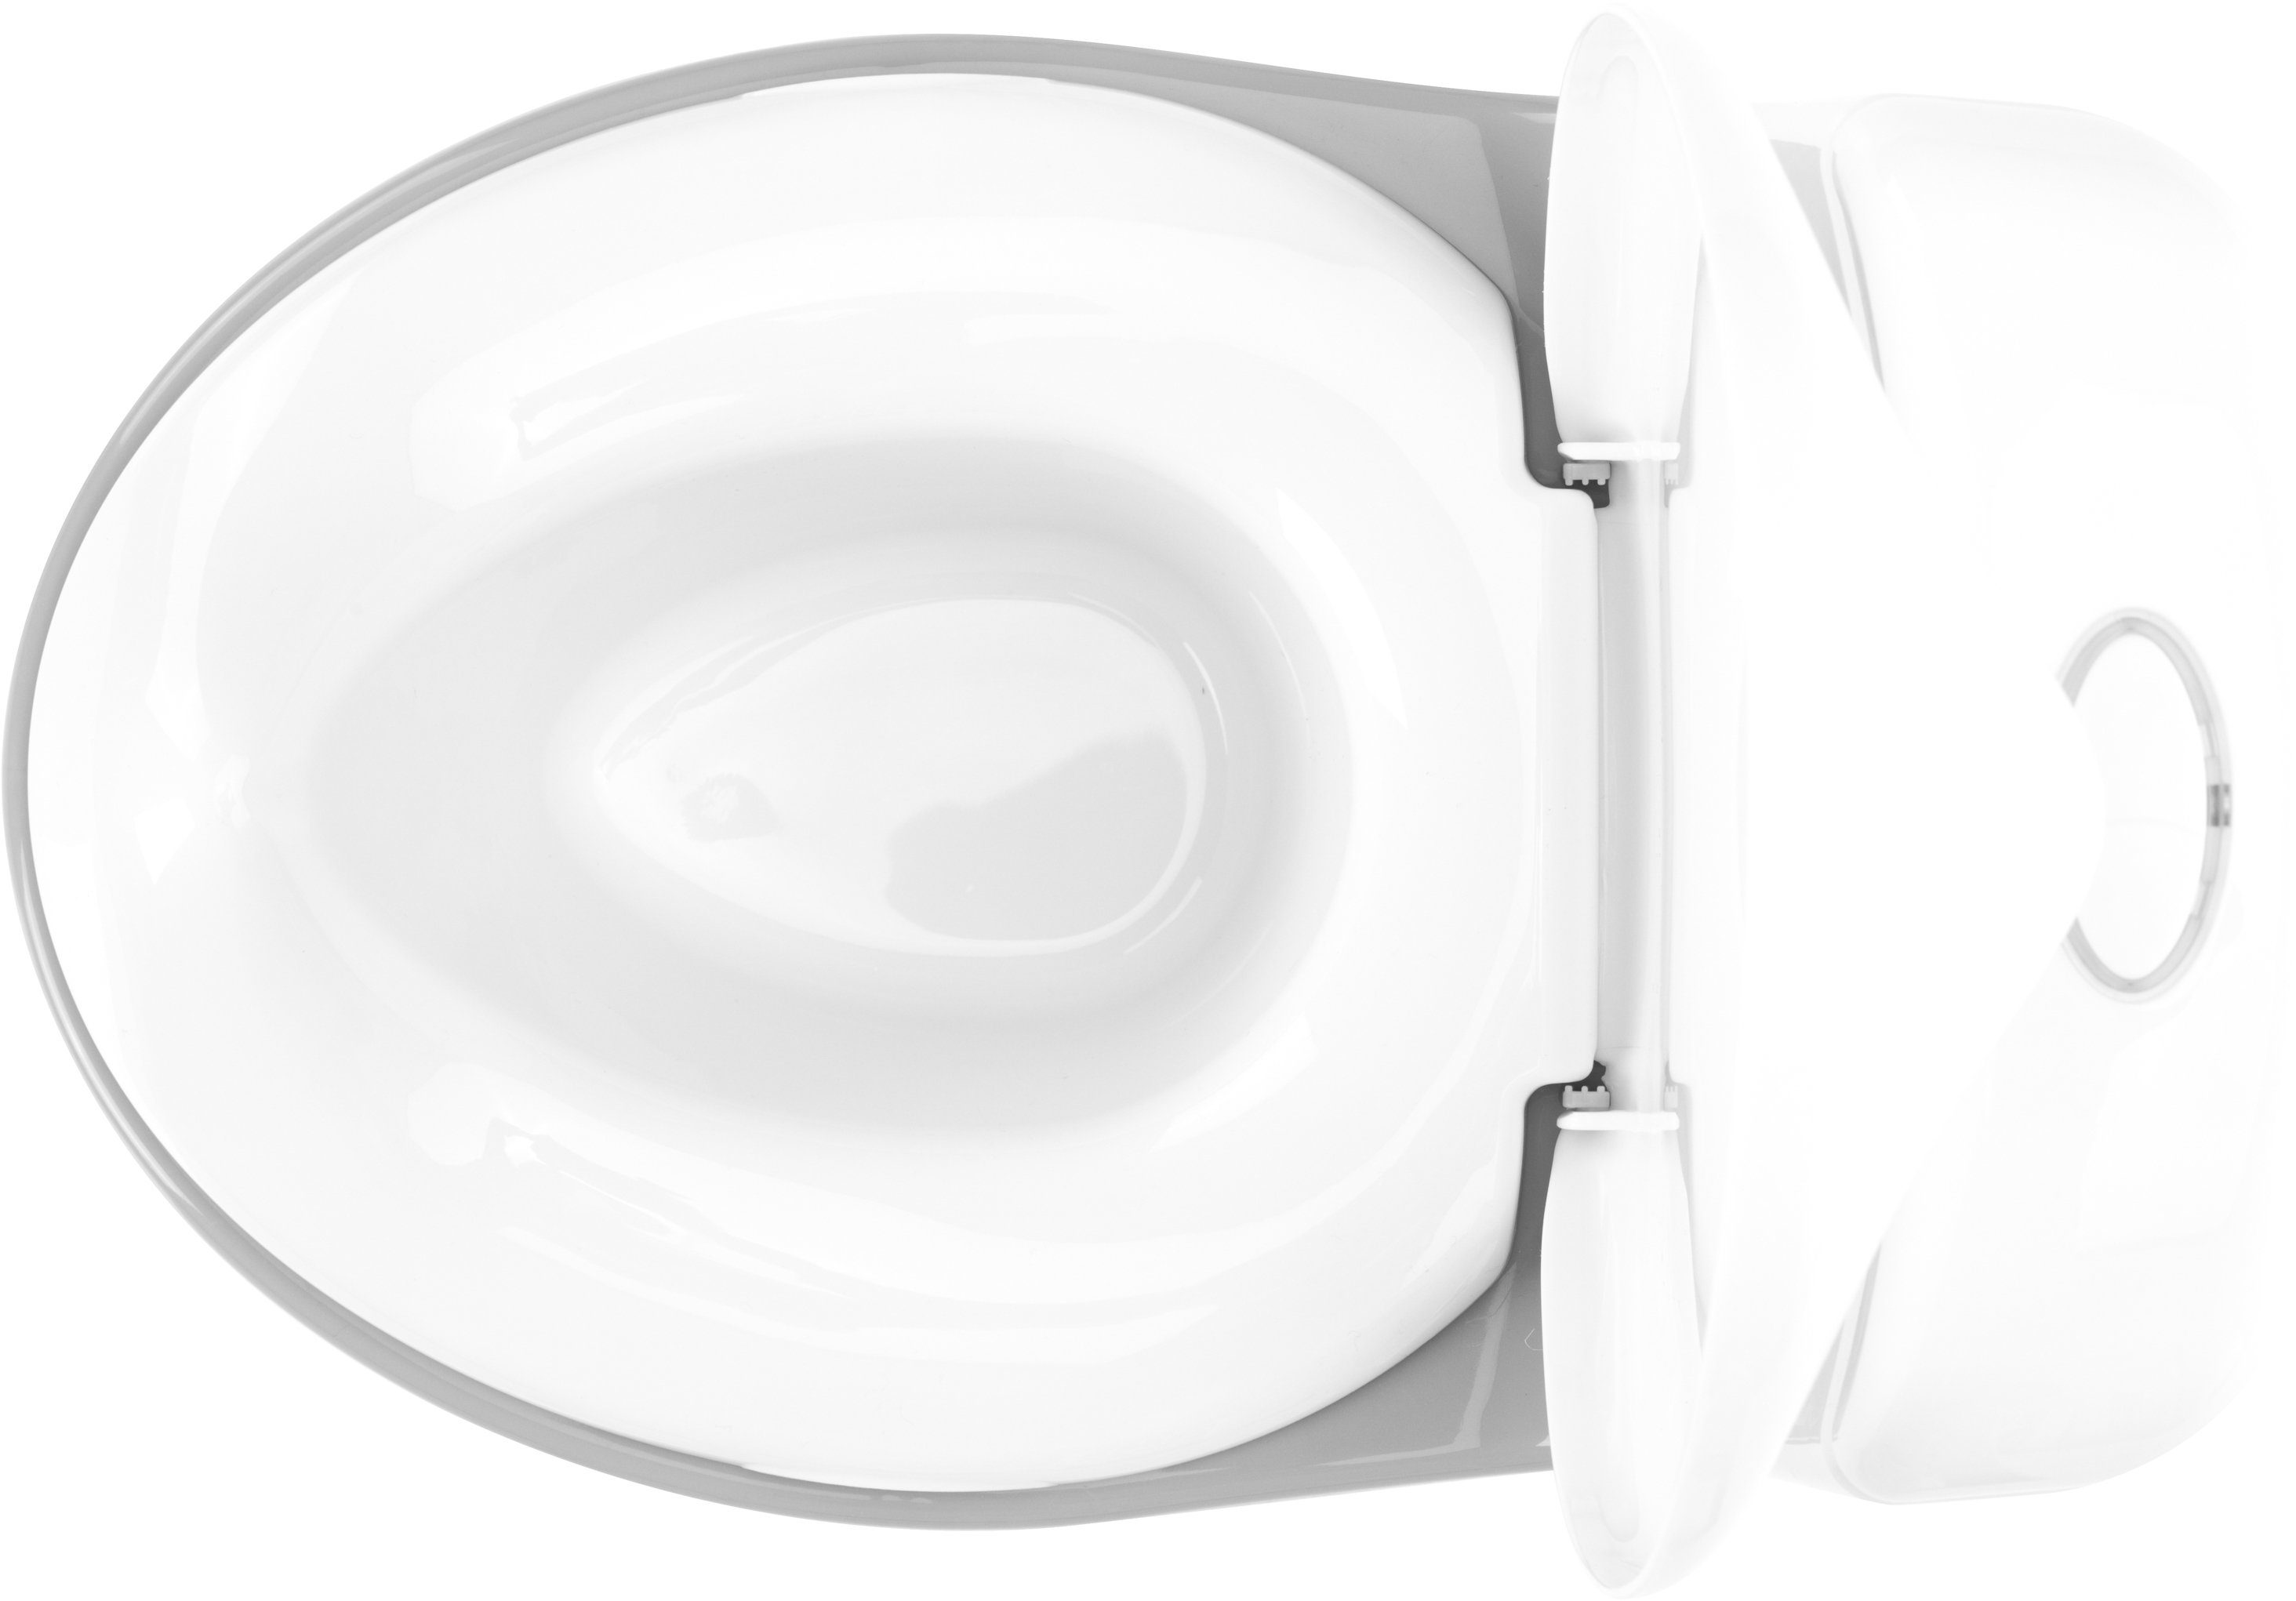 Lichteffekte Mini Toilette, inkl. Fillikid und Sound- weiß/grau, Töpfchen